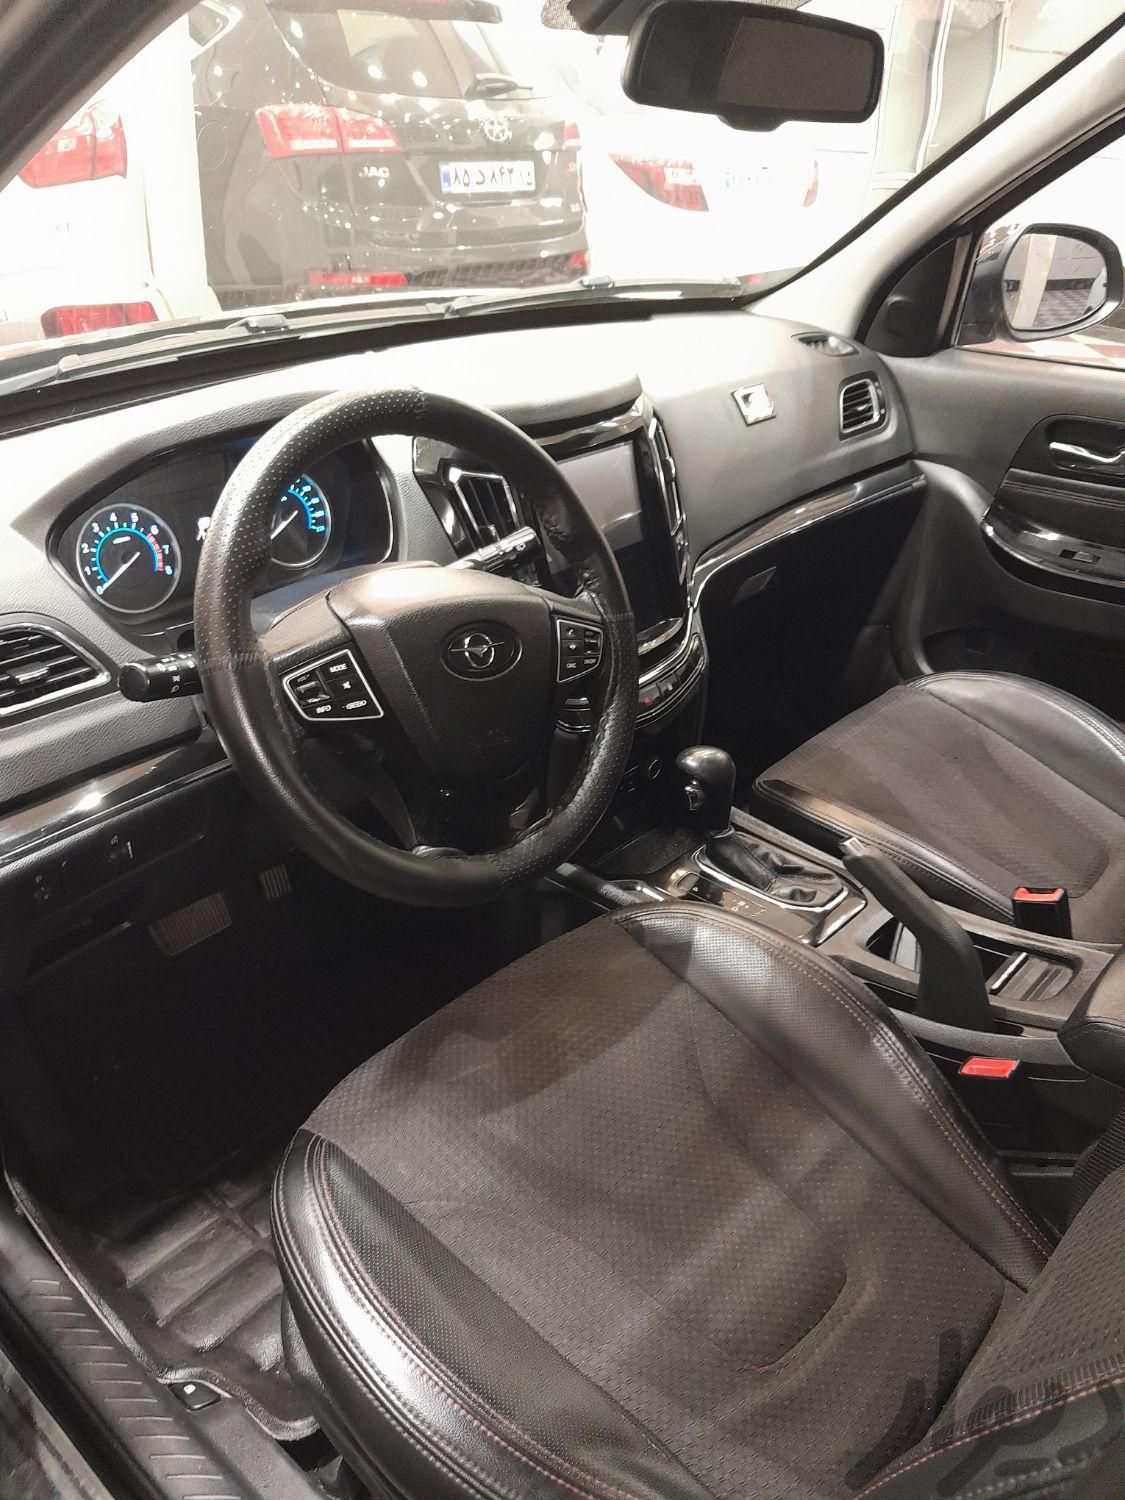 هایما S7 توربو پلاس، مدل ۱۴۰۰ فروش معاوضه